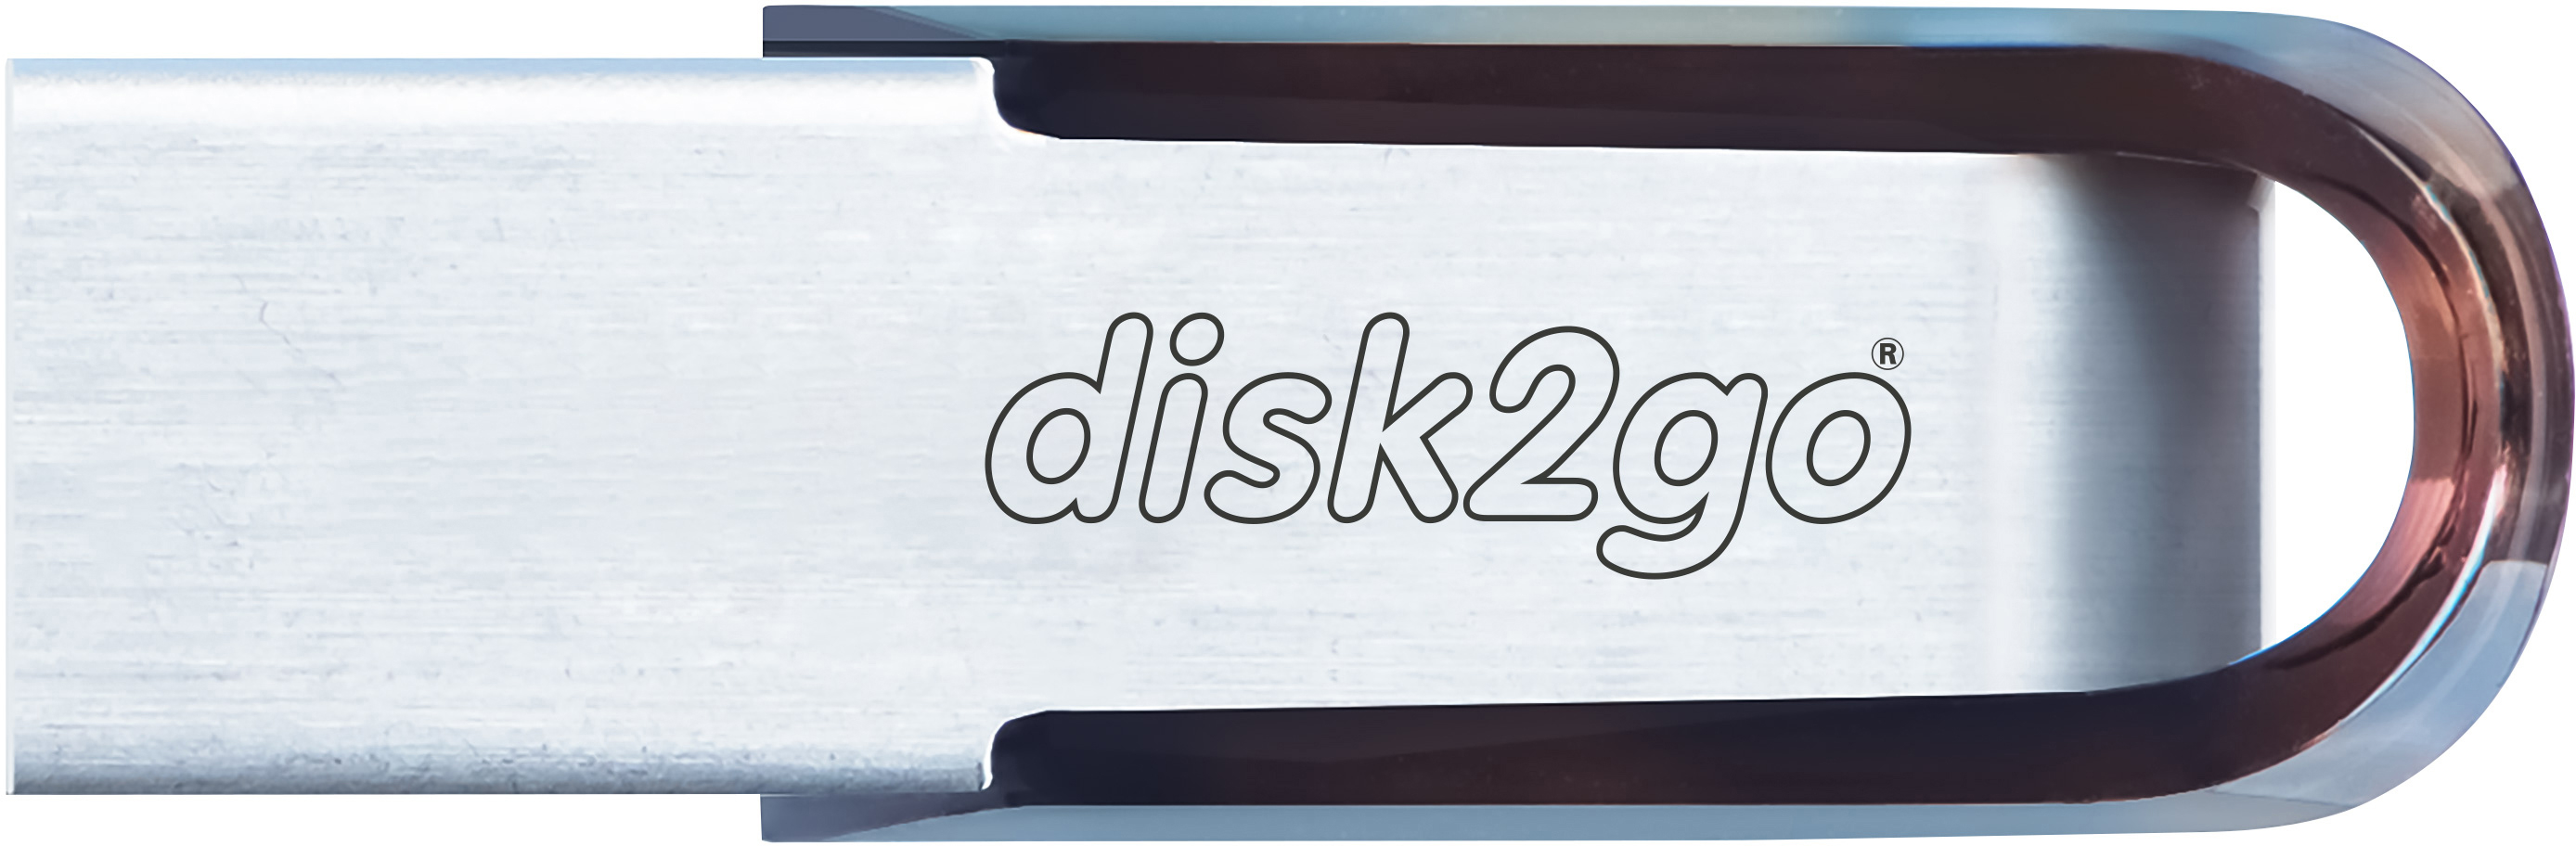 DISK2GO USB-Stick prime 16GB 30006701 USB 2.0